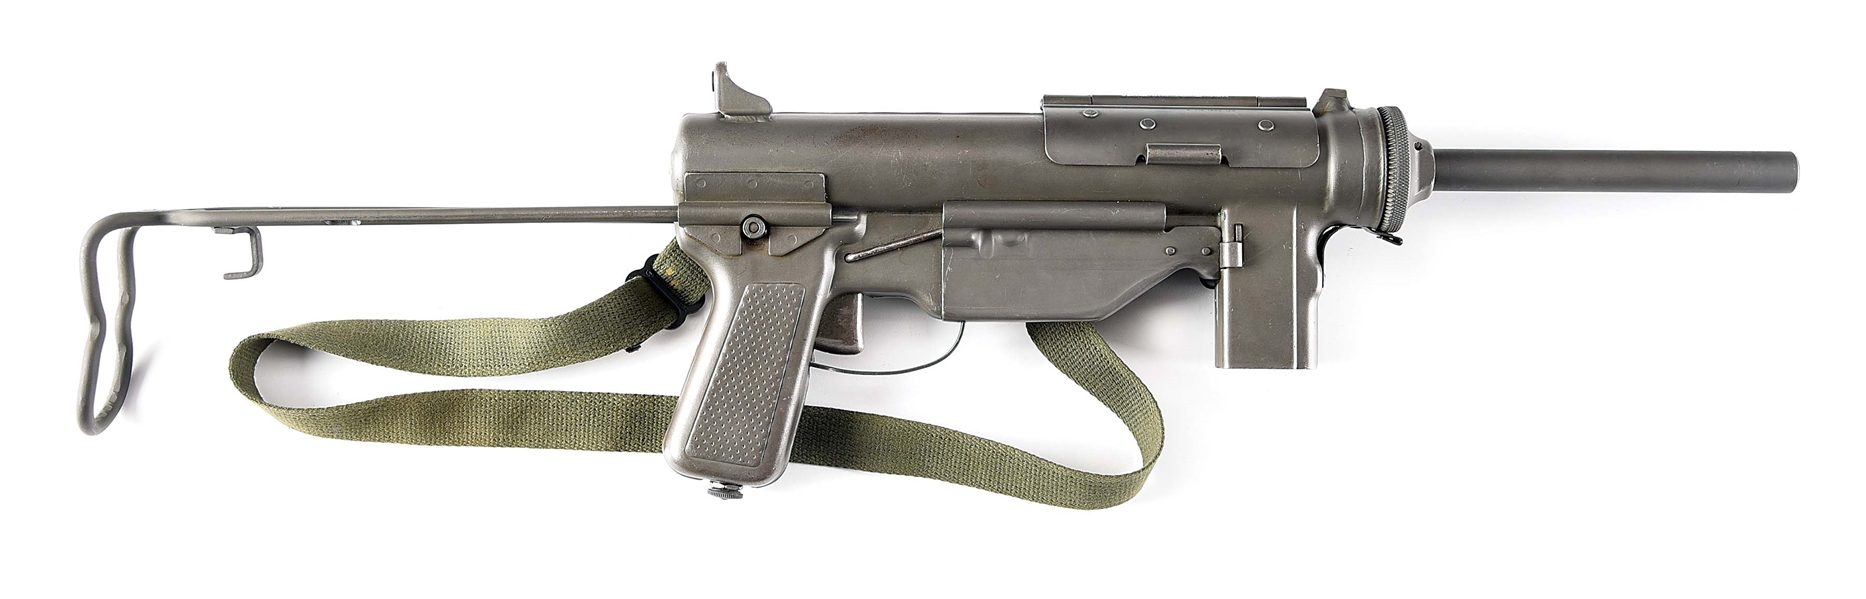 (N) ITHACA / INTER AMERICAN M3A1 "GREASE GUN" SUBMACHINE GUN (PRE-86 DEALER SAMPLE).